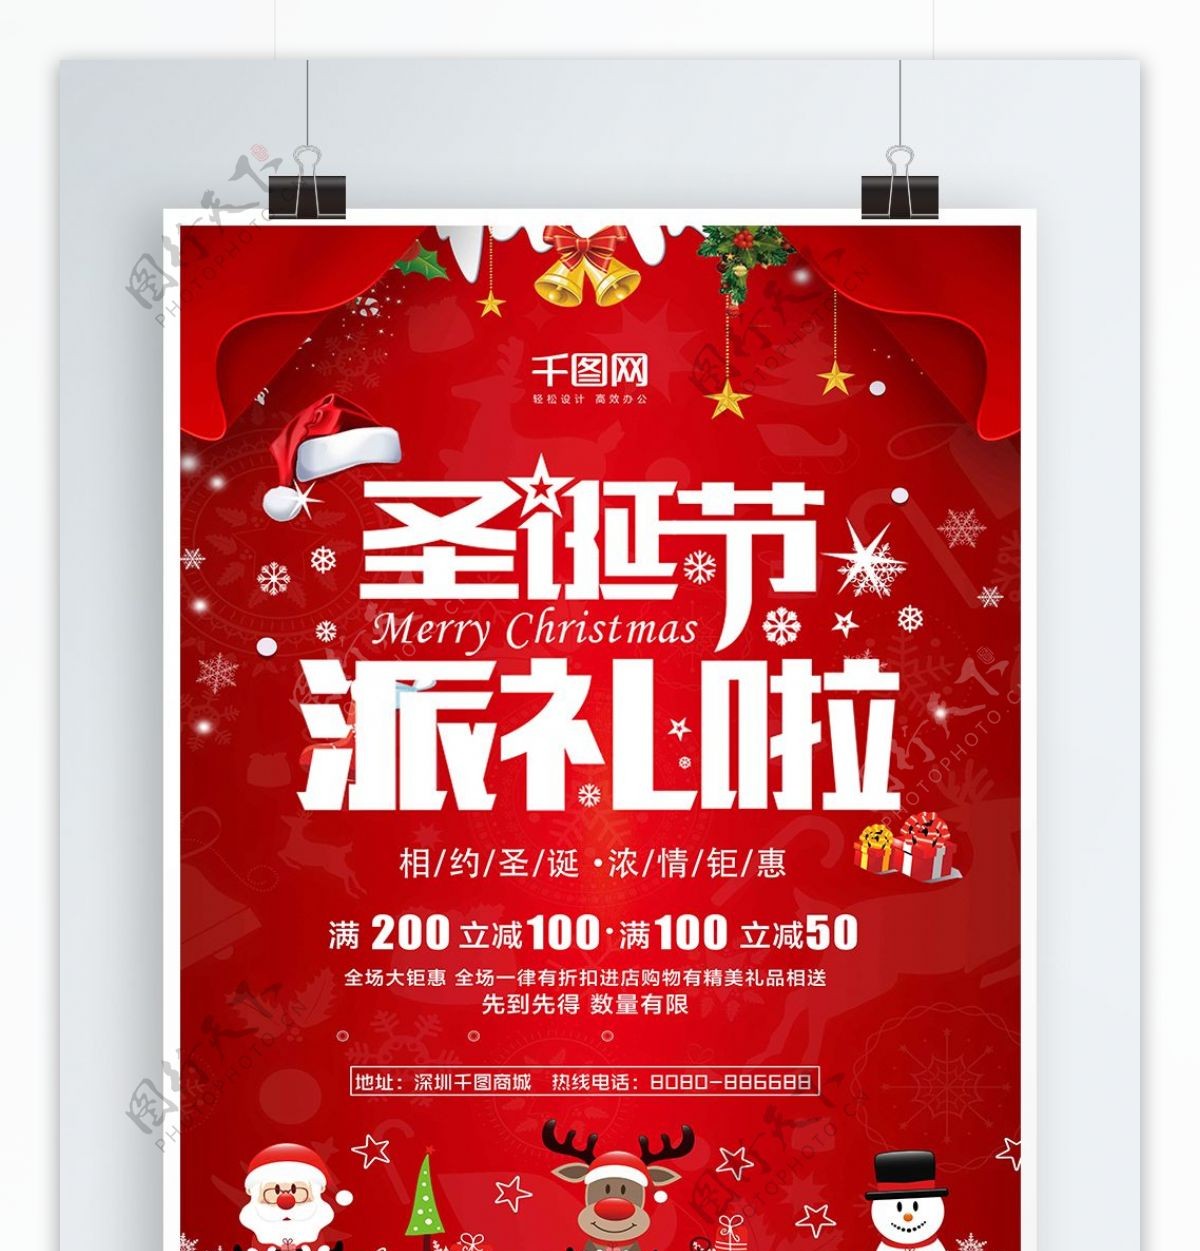 2018年红色喜庆圣诞节满减促销活动节日海报设计